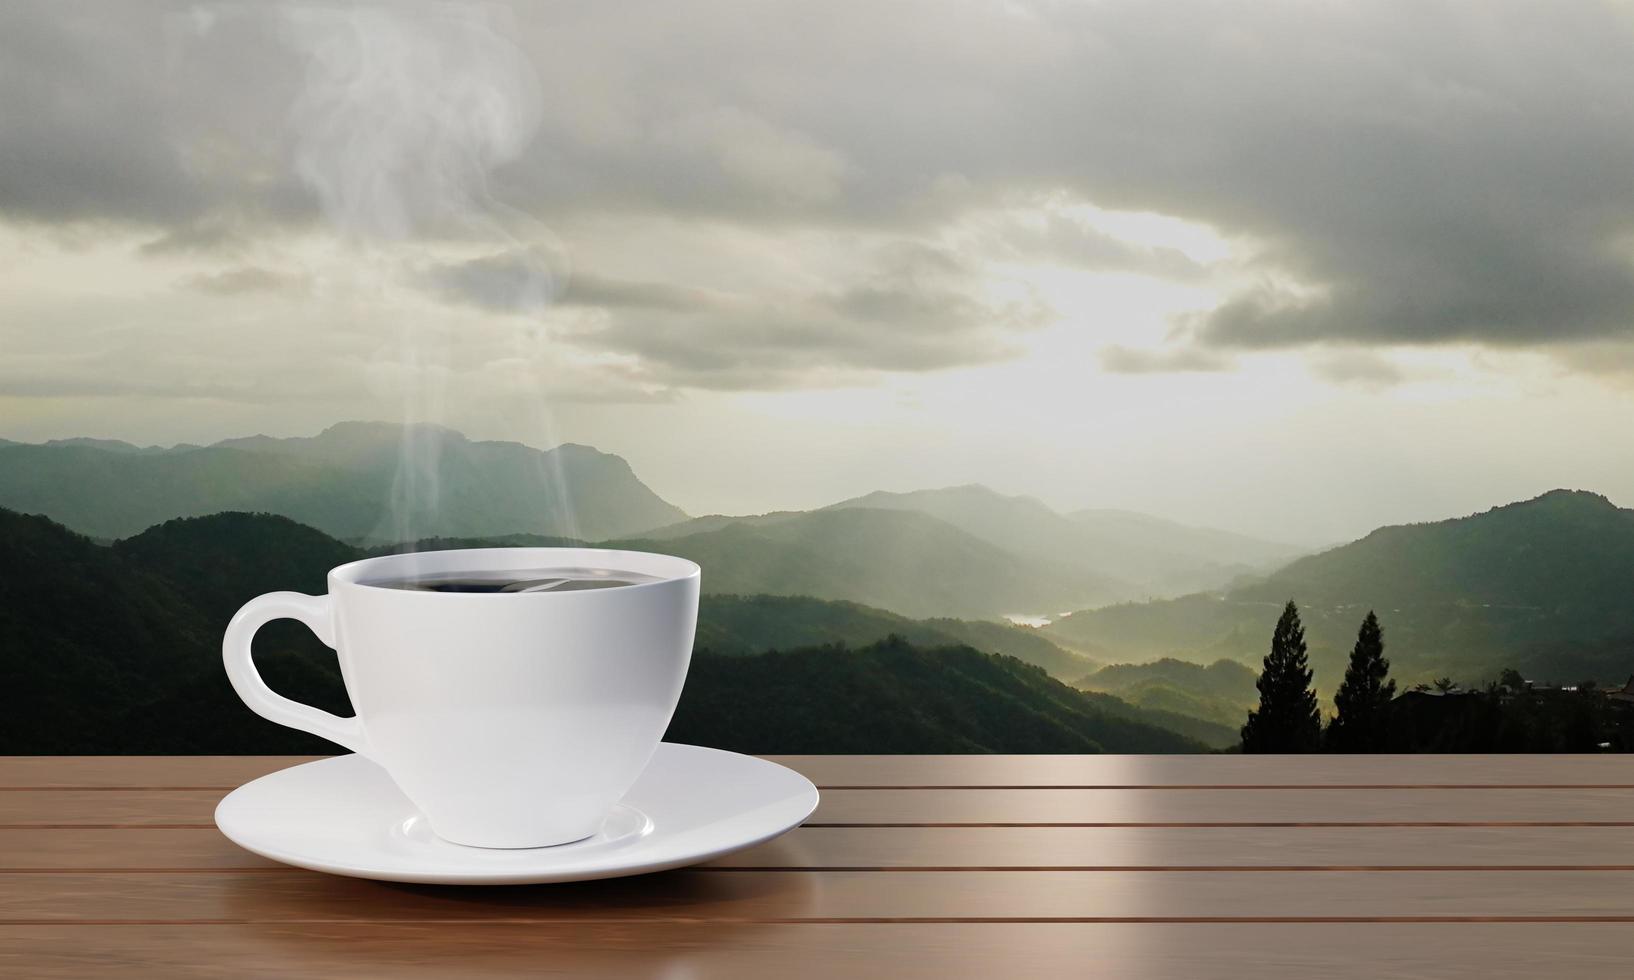 café preto em uma caneca de café branco há fumaça ou vapor branco subindo. café expresso quente em uma mesa de madeira no café da manhã o fundo é um cenário de montanha. o sol da manhã está nascendo. renderização em 3D foto